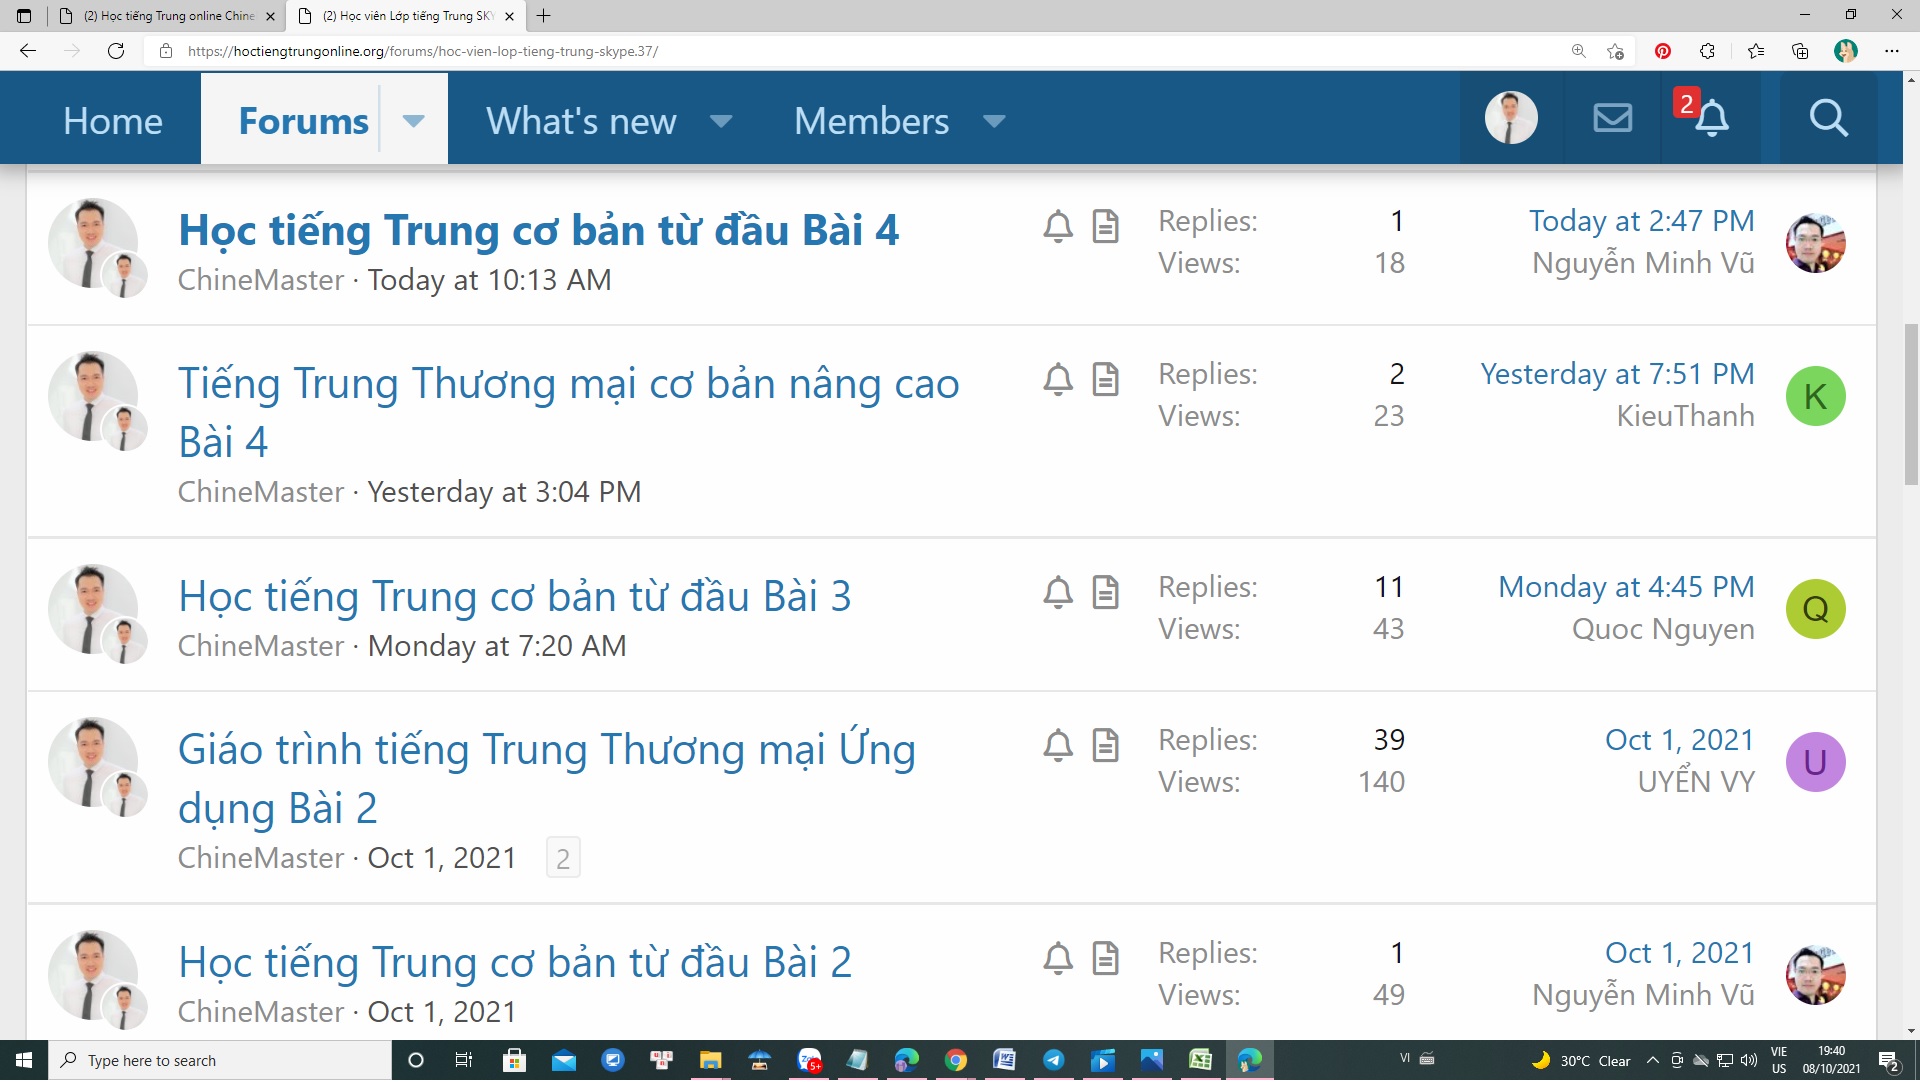 Chuyên mục tổng hợp và lưu trữ tất cả bài học Thầy Vũ tạo trên lớp có kèm theo cả video livestream từ kênh youtube học tiếng Trung online ChineMaster